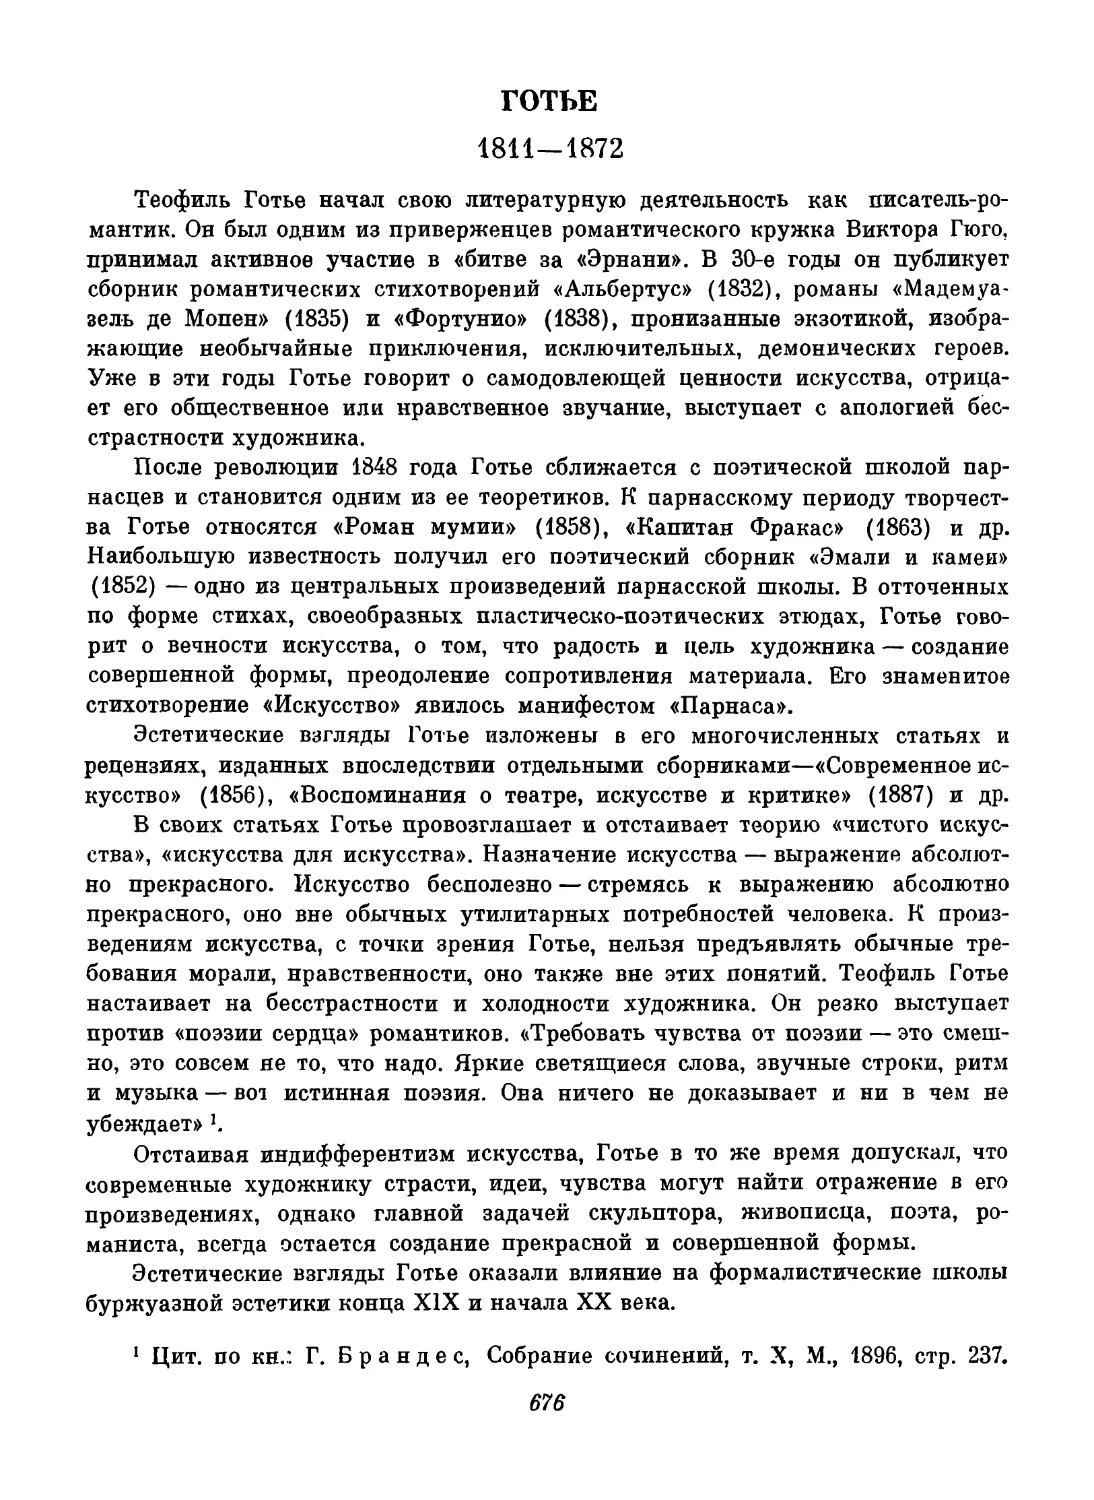 Готье. Вступительный текст, составление и перевод И. А. Лилеевой